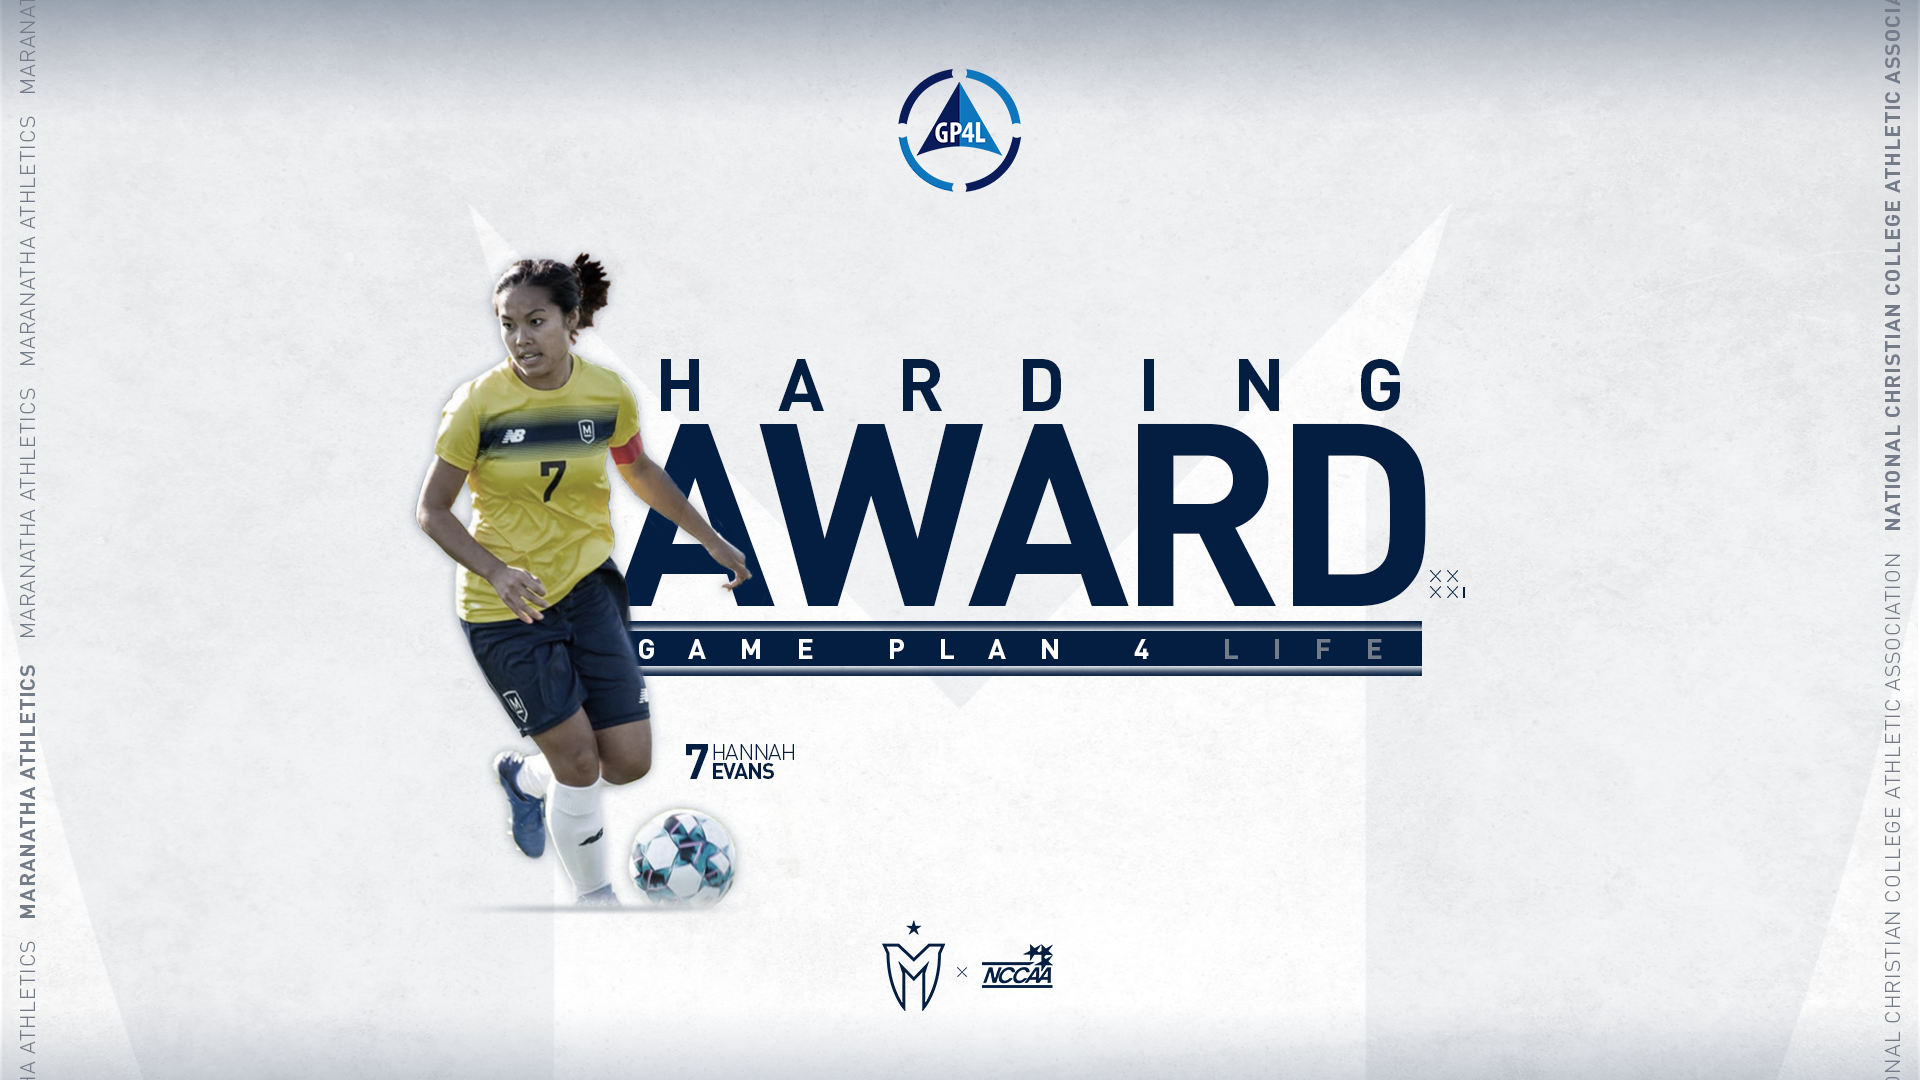 Evans Named Harding Award Recipient